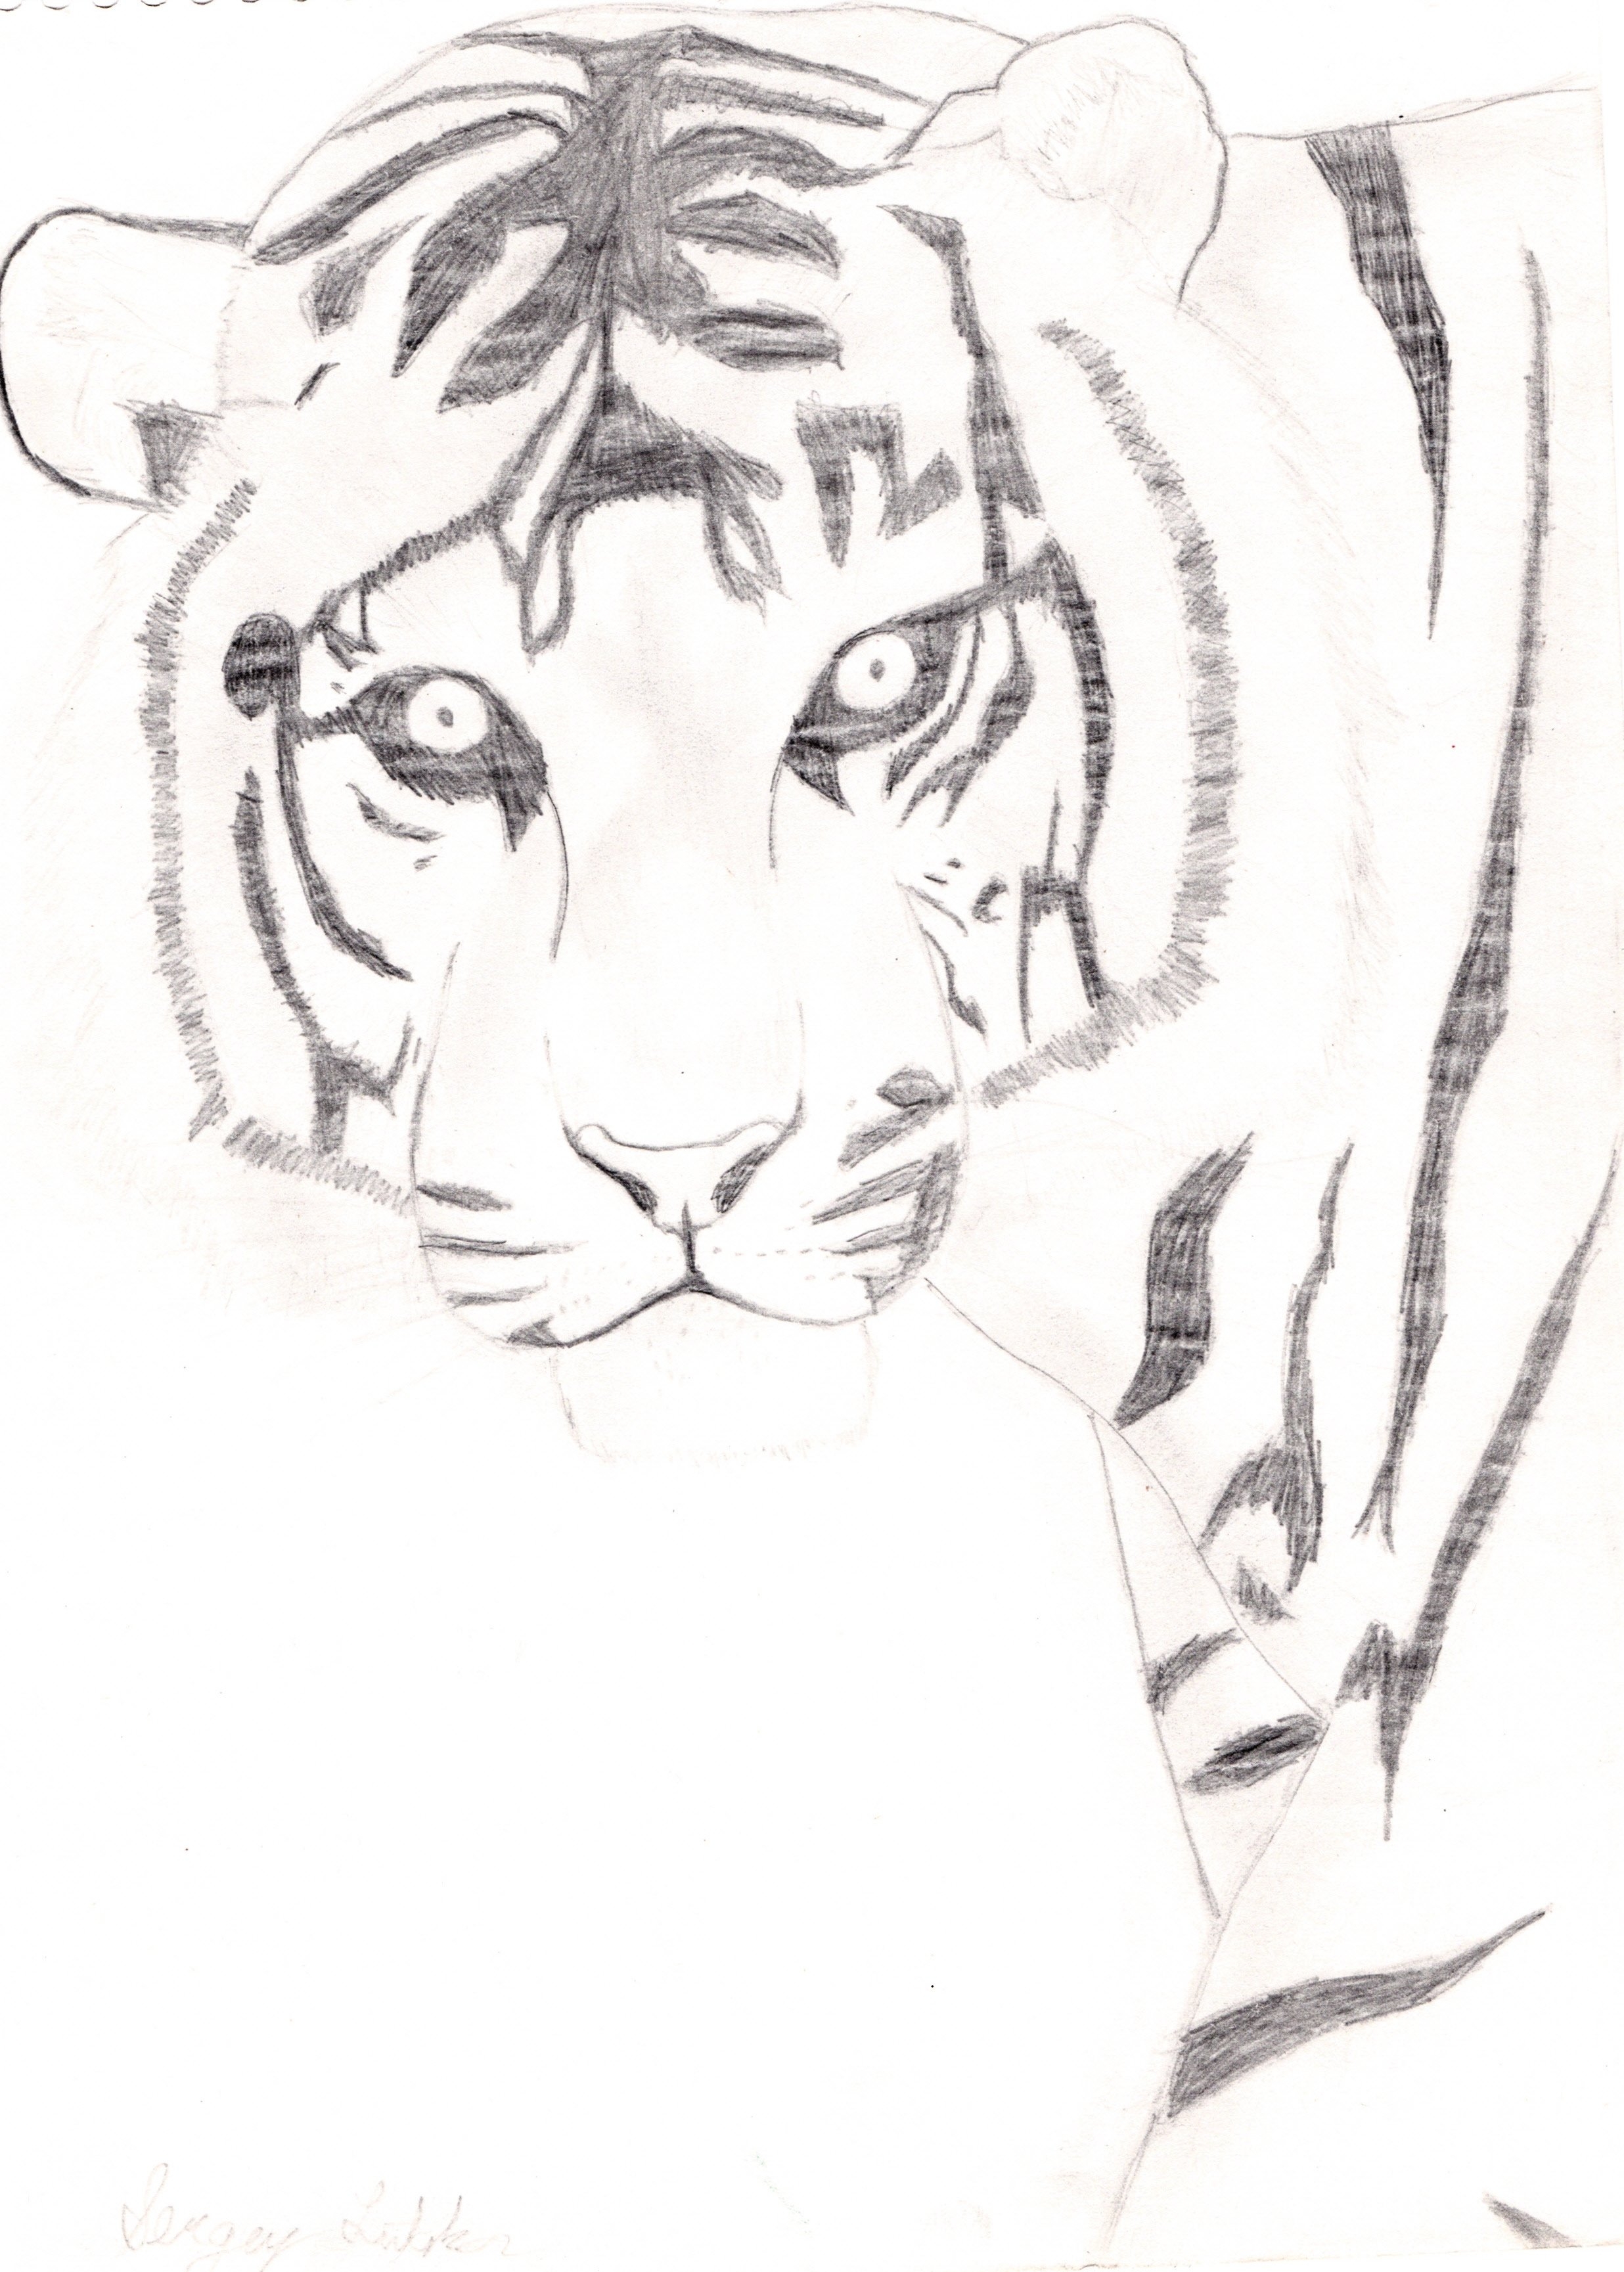 Картинки тигра для срисовки